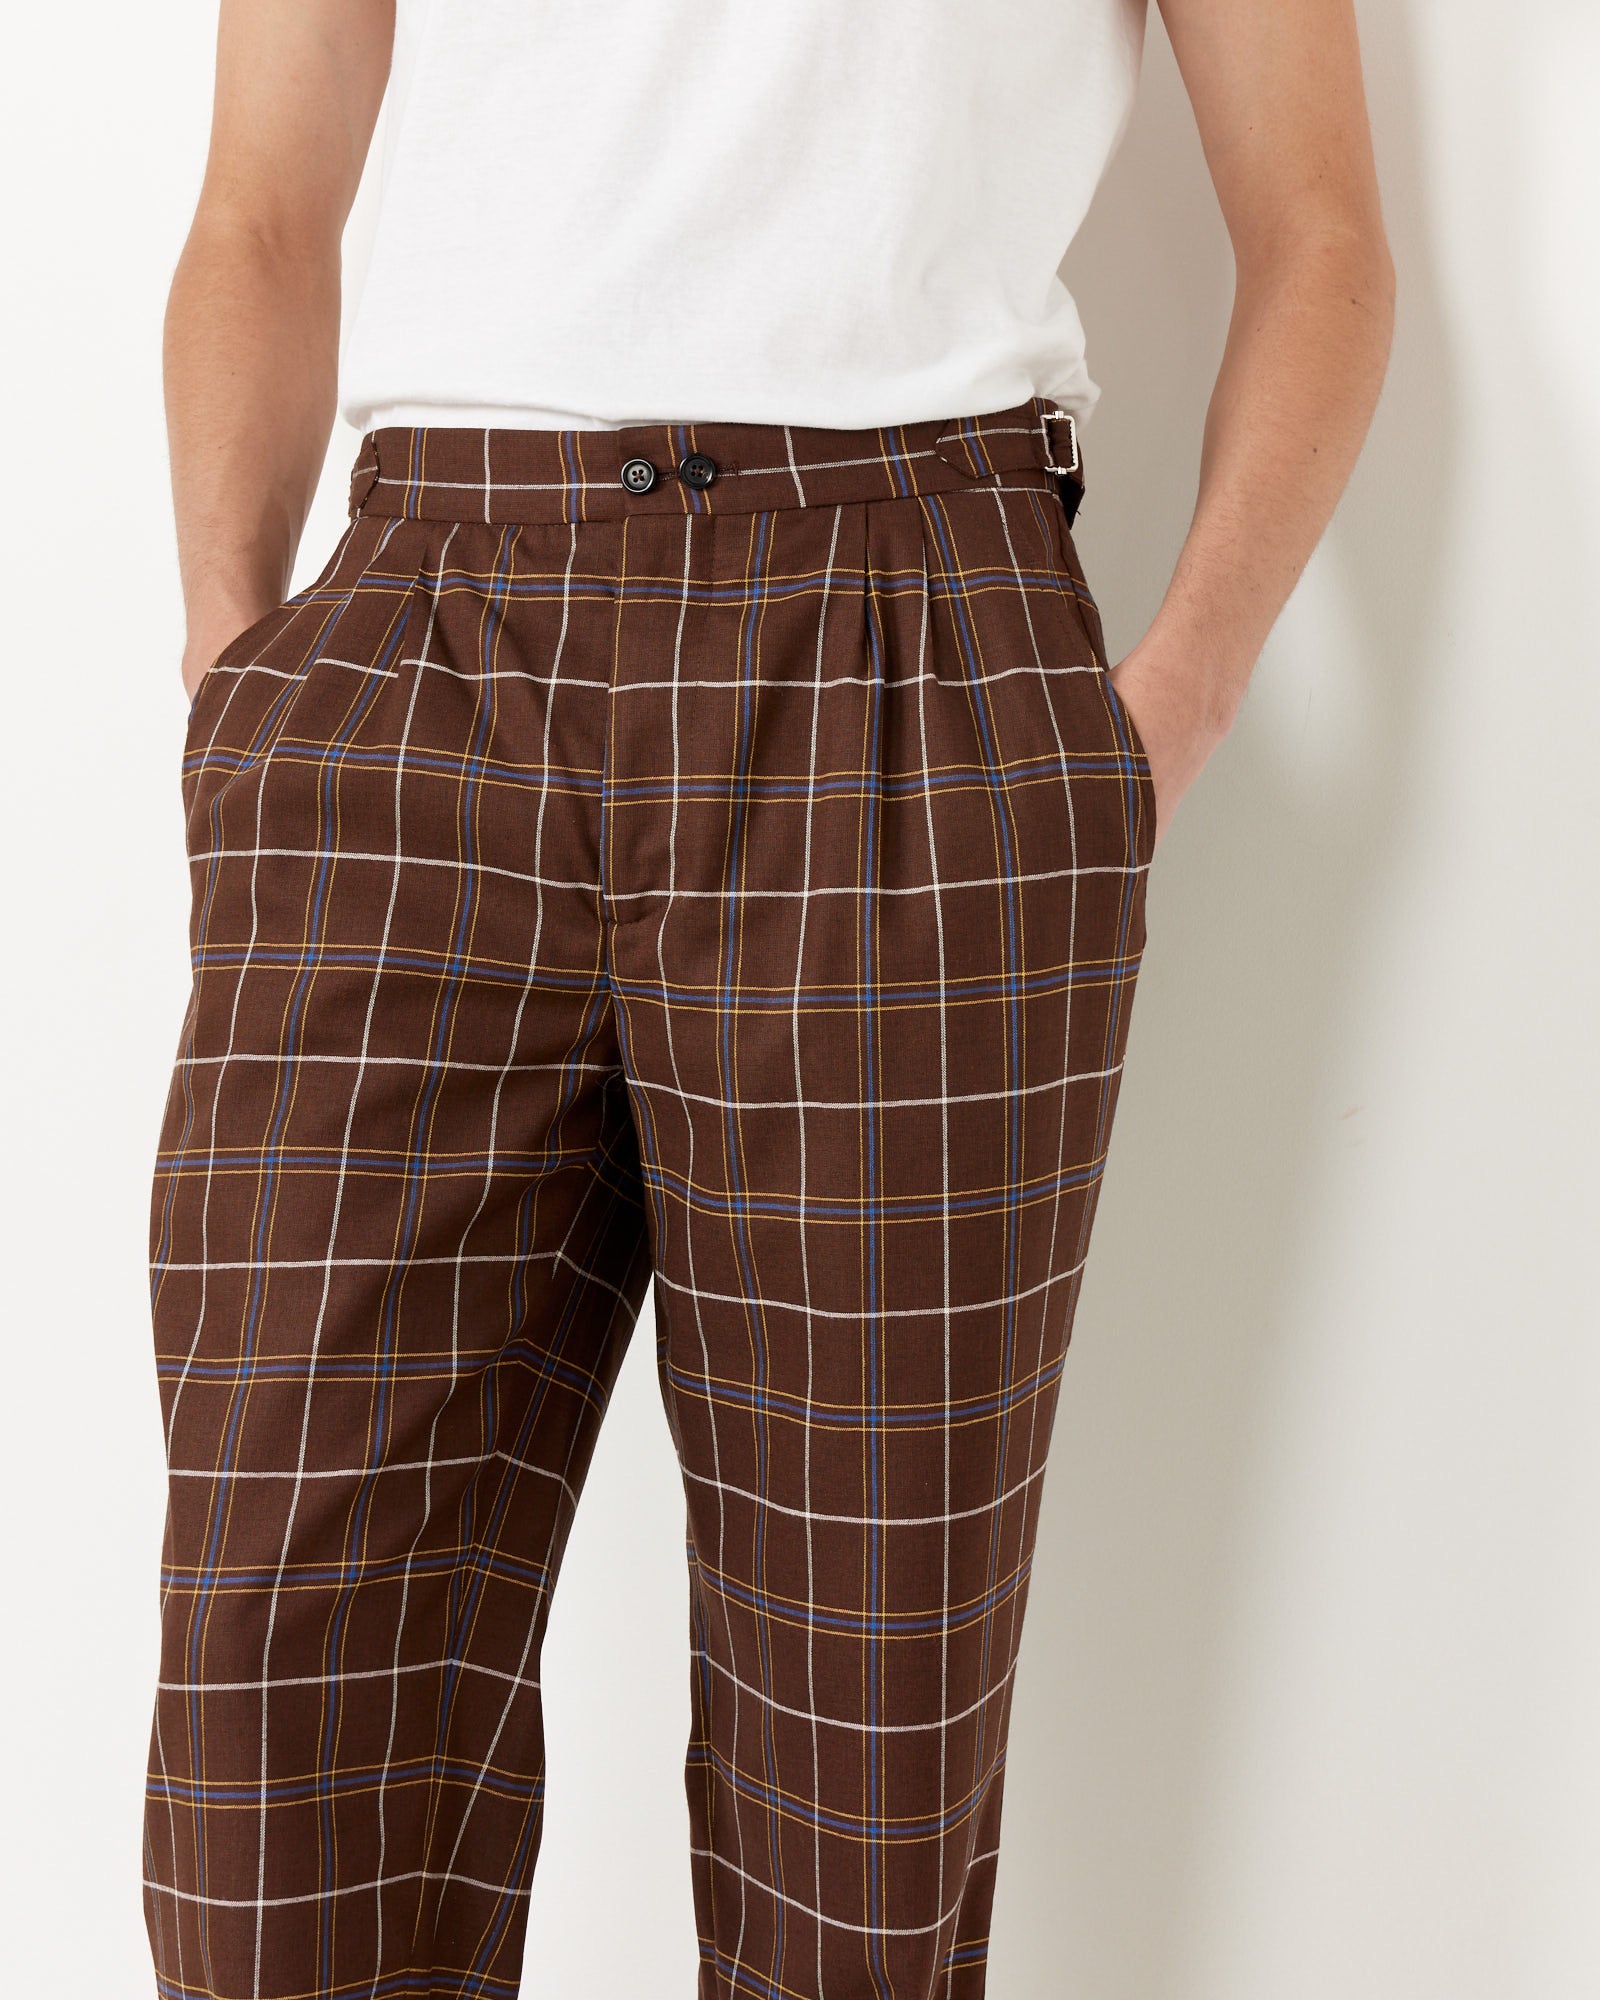 Dunham Plaid Trouser in Brown Multi